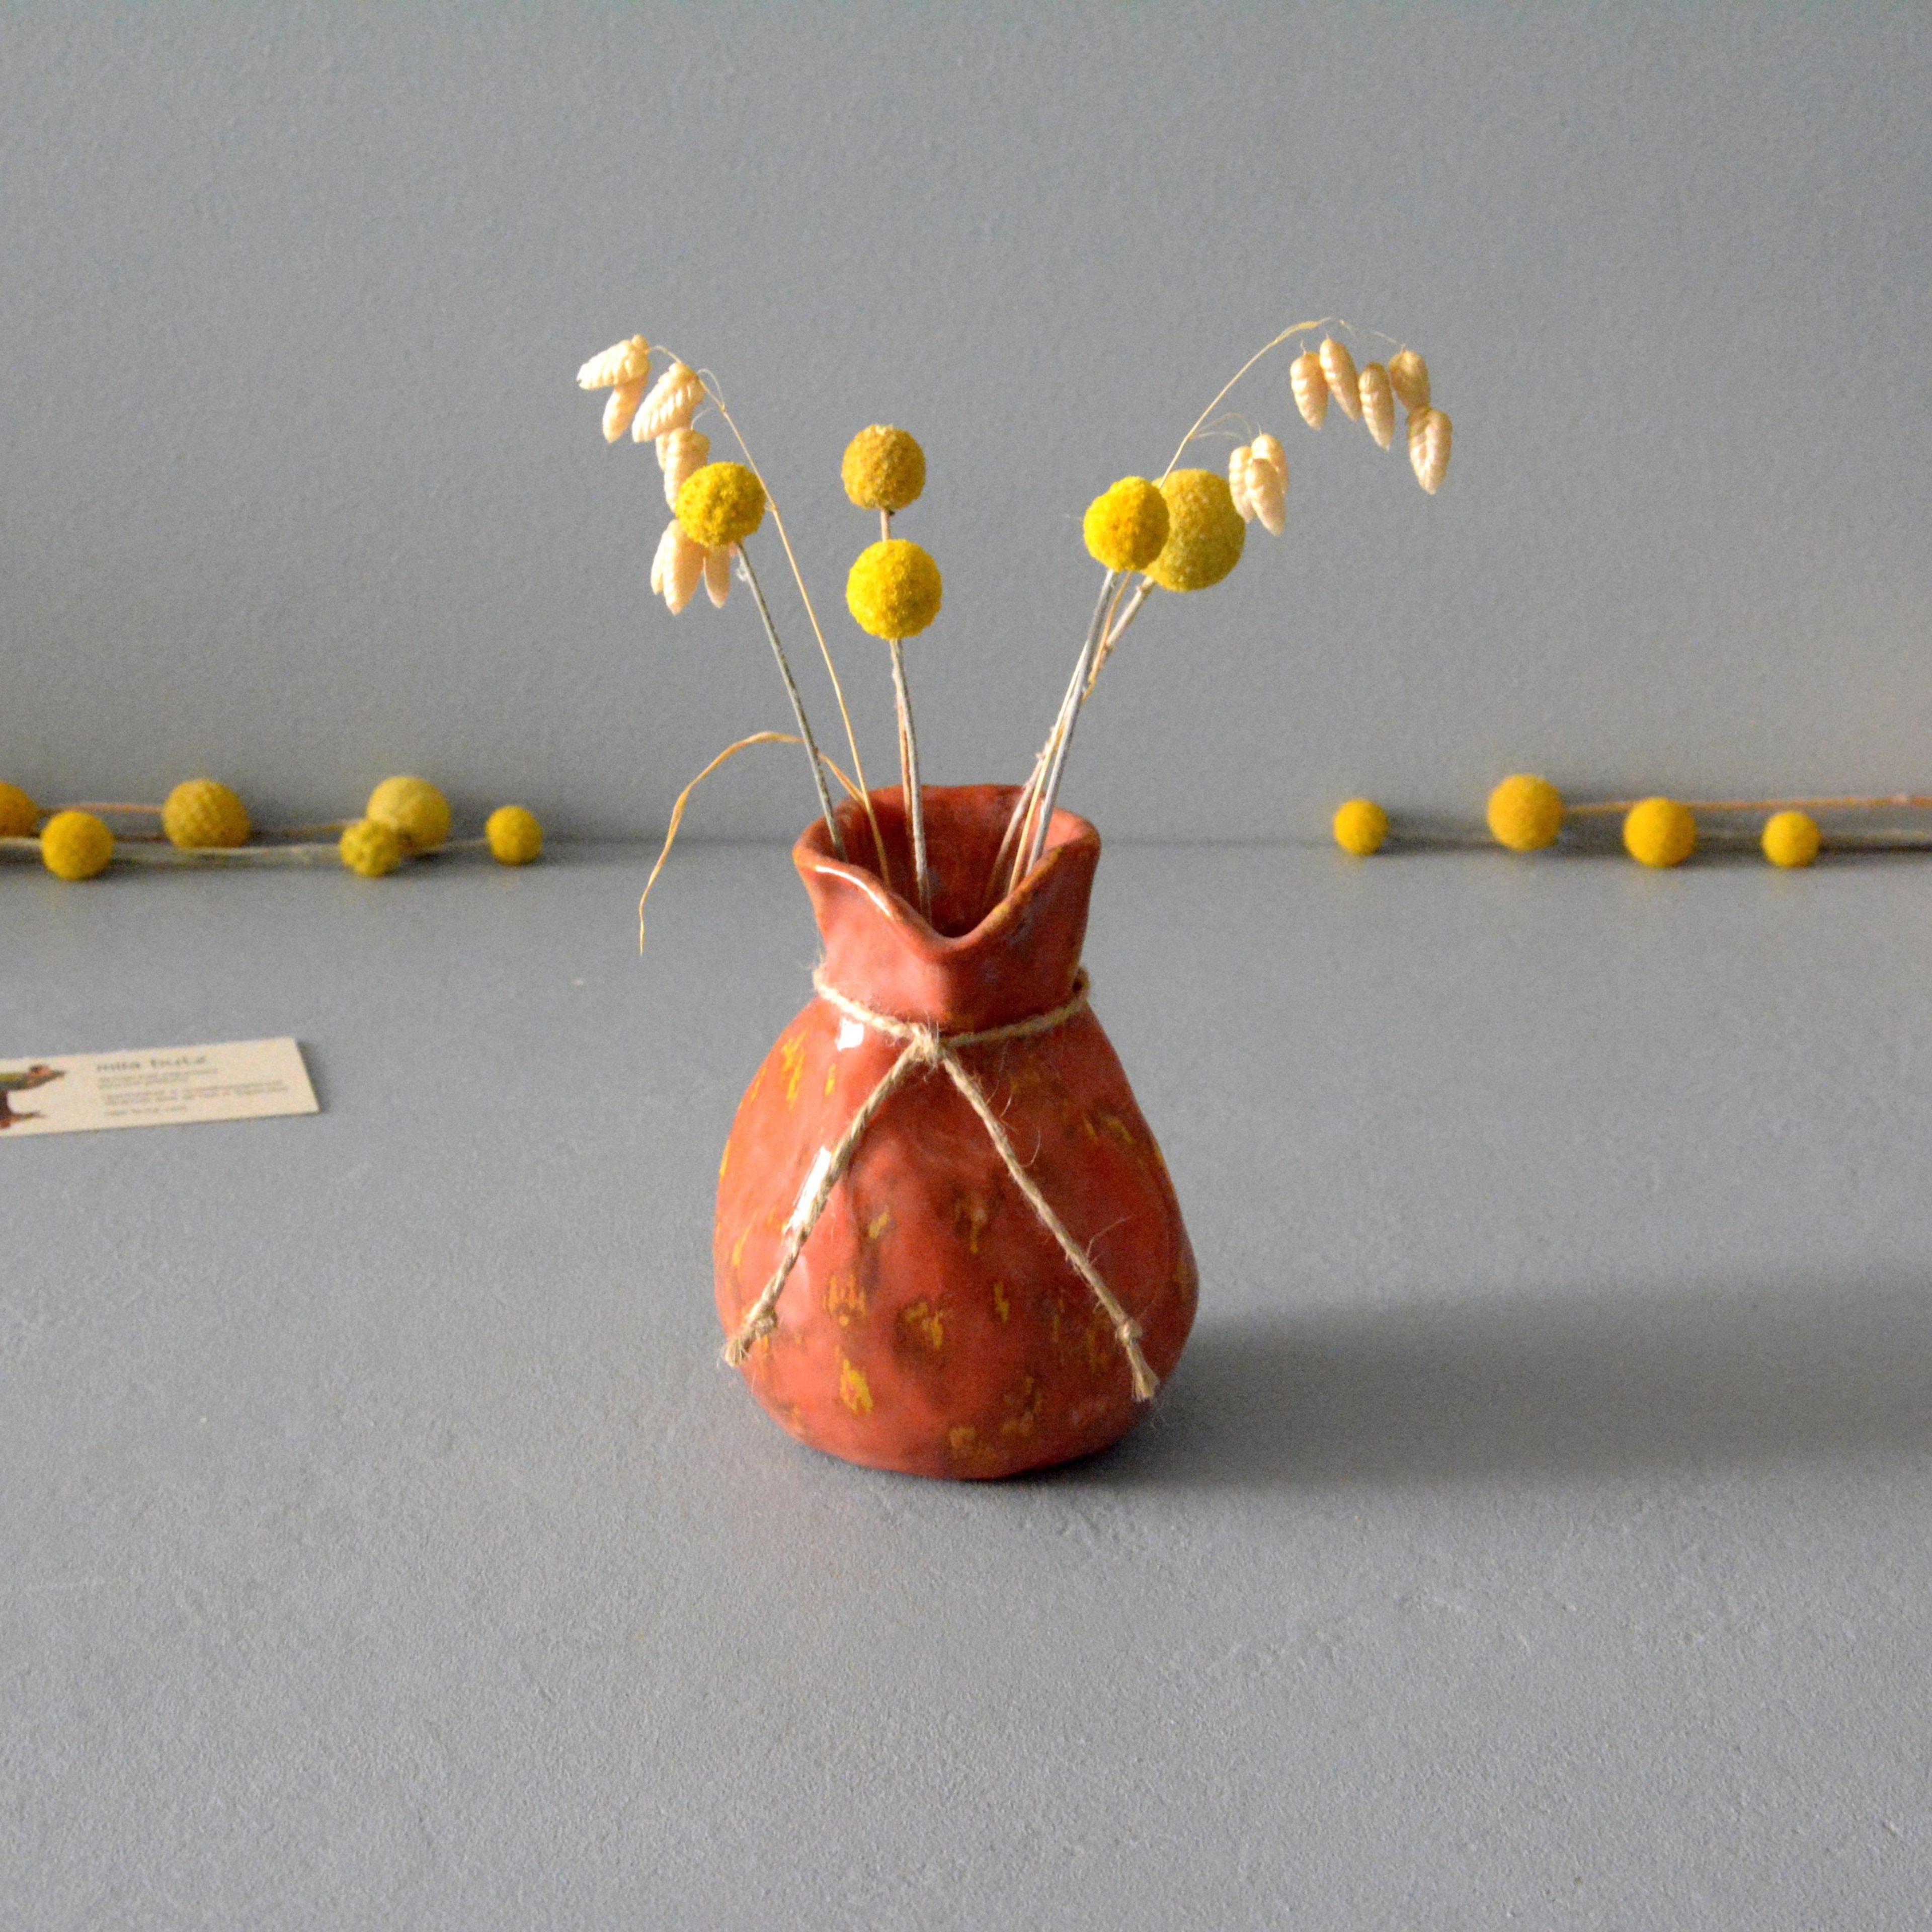 Декоративная ваза «Кирпичный с жёлтым Мешочек», высота - 12 см. Фото 1297-3840-3840.